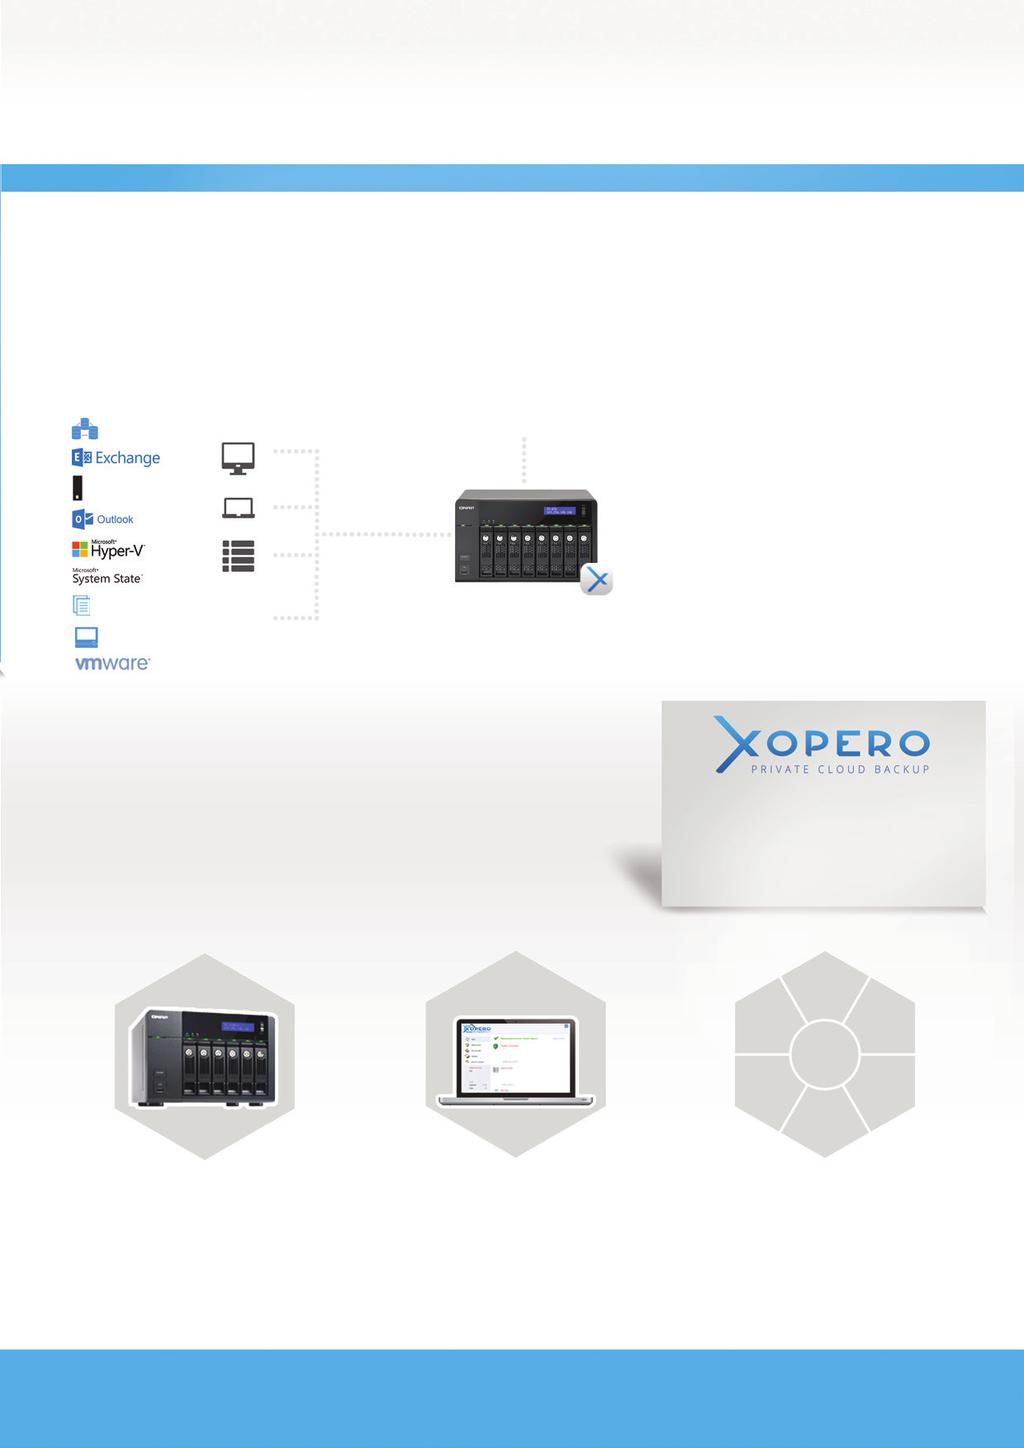 XOPERO DLA QNAP Odkryj centralnie zarządzane rozwiązanie do backupu Databases STACJE ROBOCZE I SERWERY CENTRALNE ZARZĄDZANIE Xopero Backup Appliance Pozwala łatwo tworzyć kopie zapasowe,